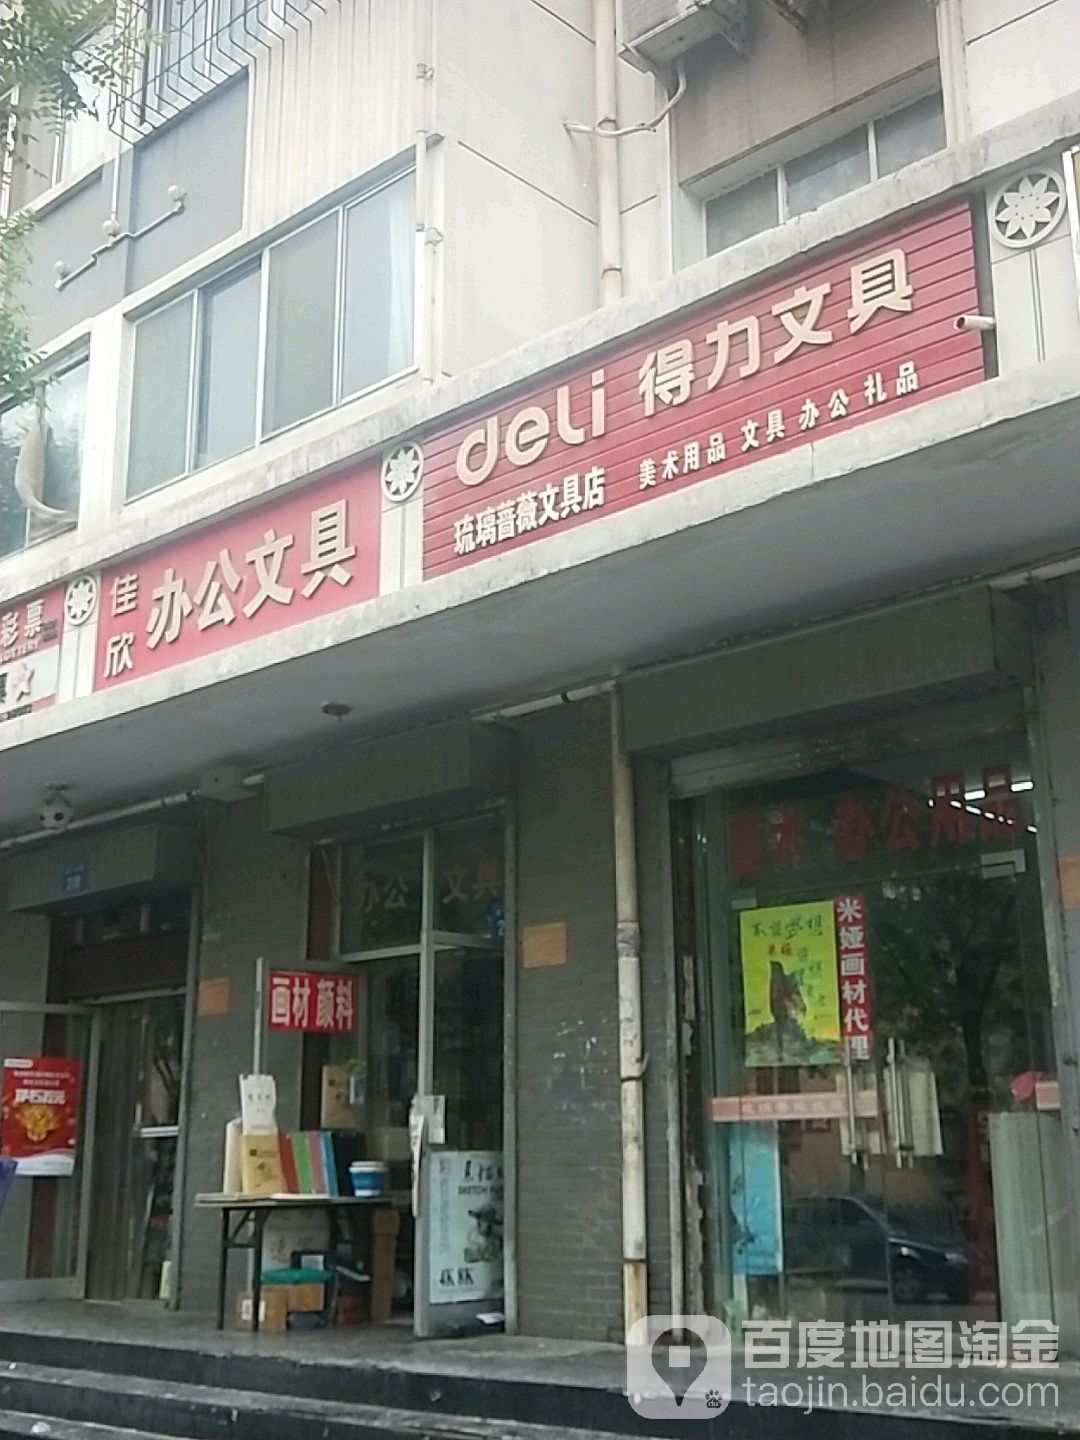 琉璃薔微文具店